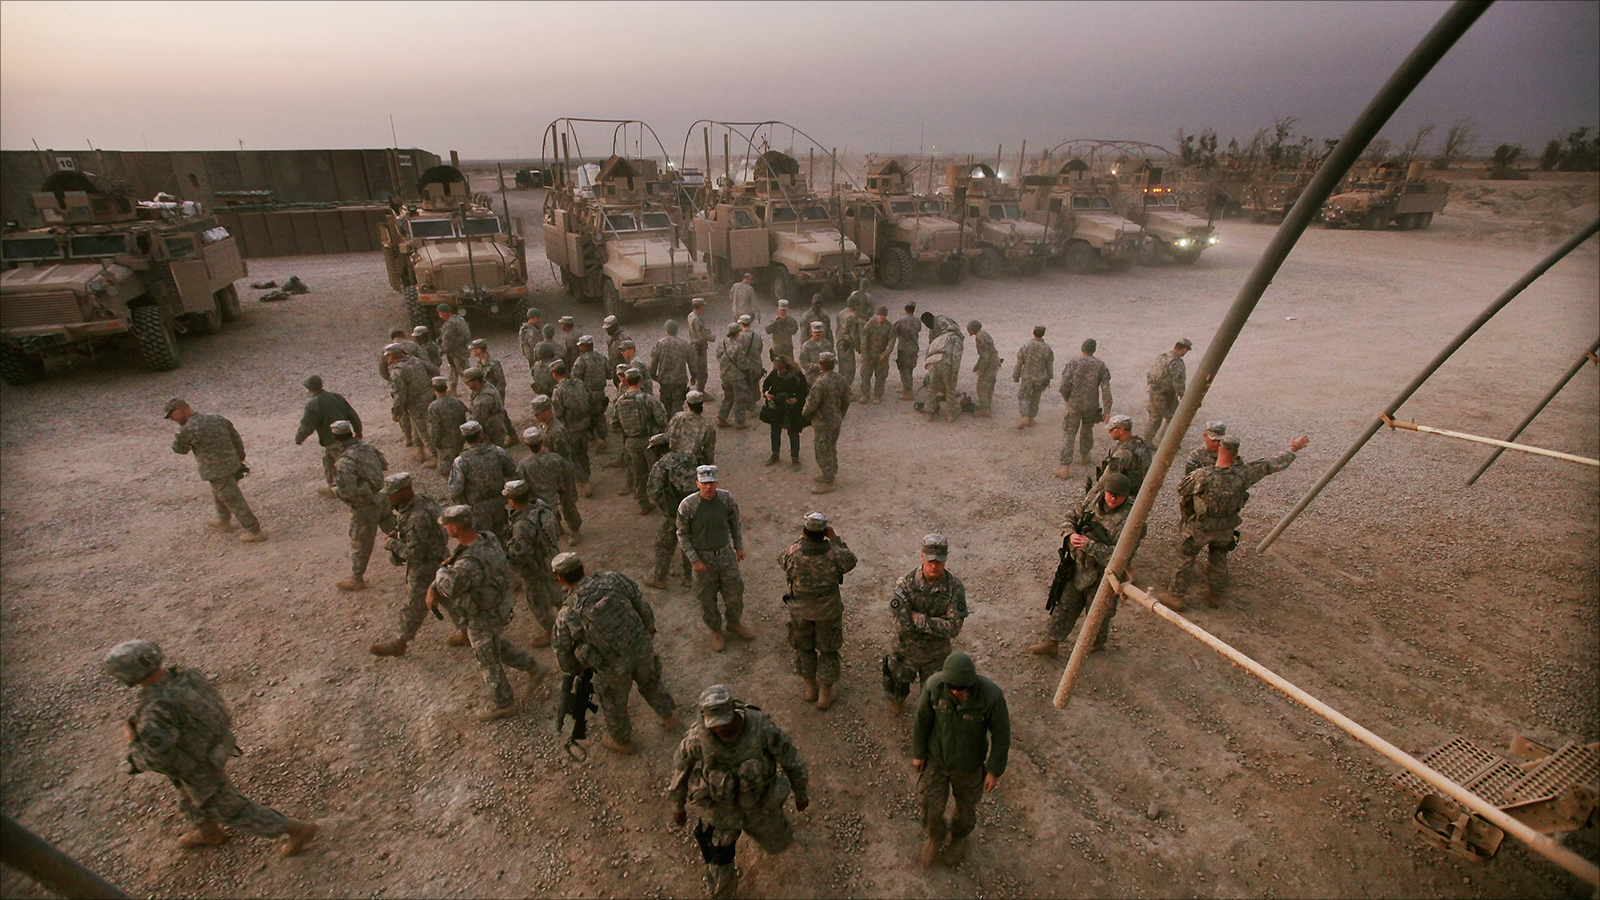 ‪قوات من الجيش الأميركي خلال وجودها في إحدى القواعد العسكرية جنوبي العراق‬ (الأوروبية)